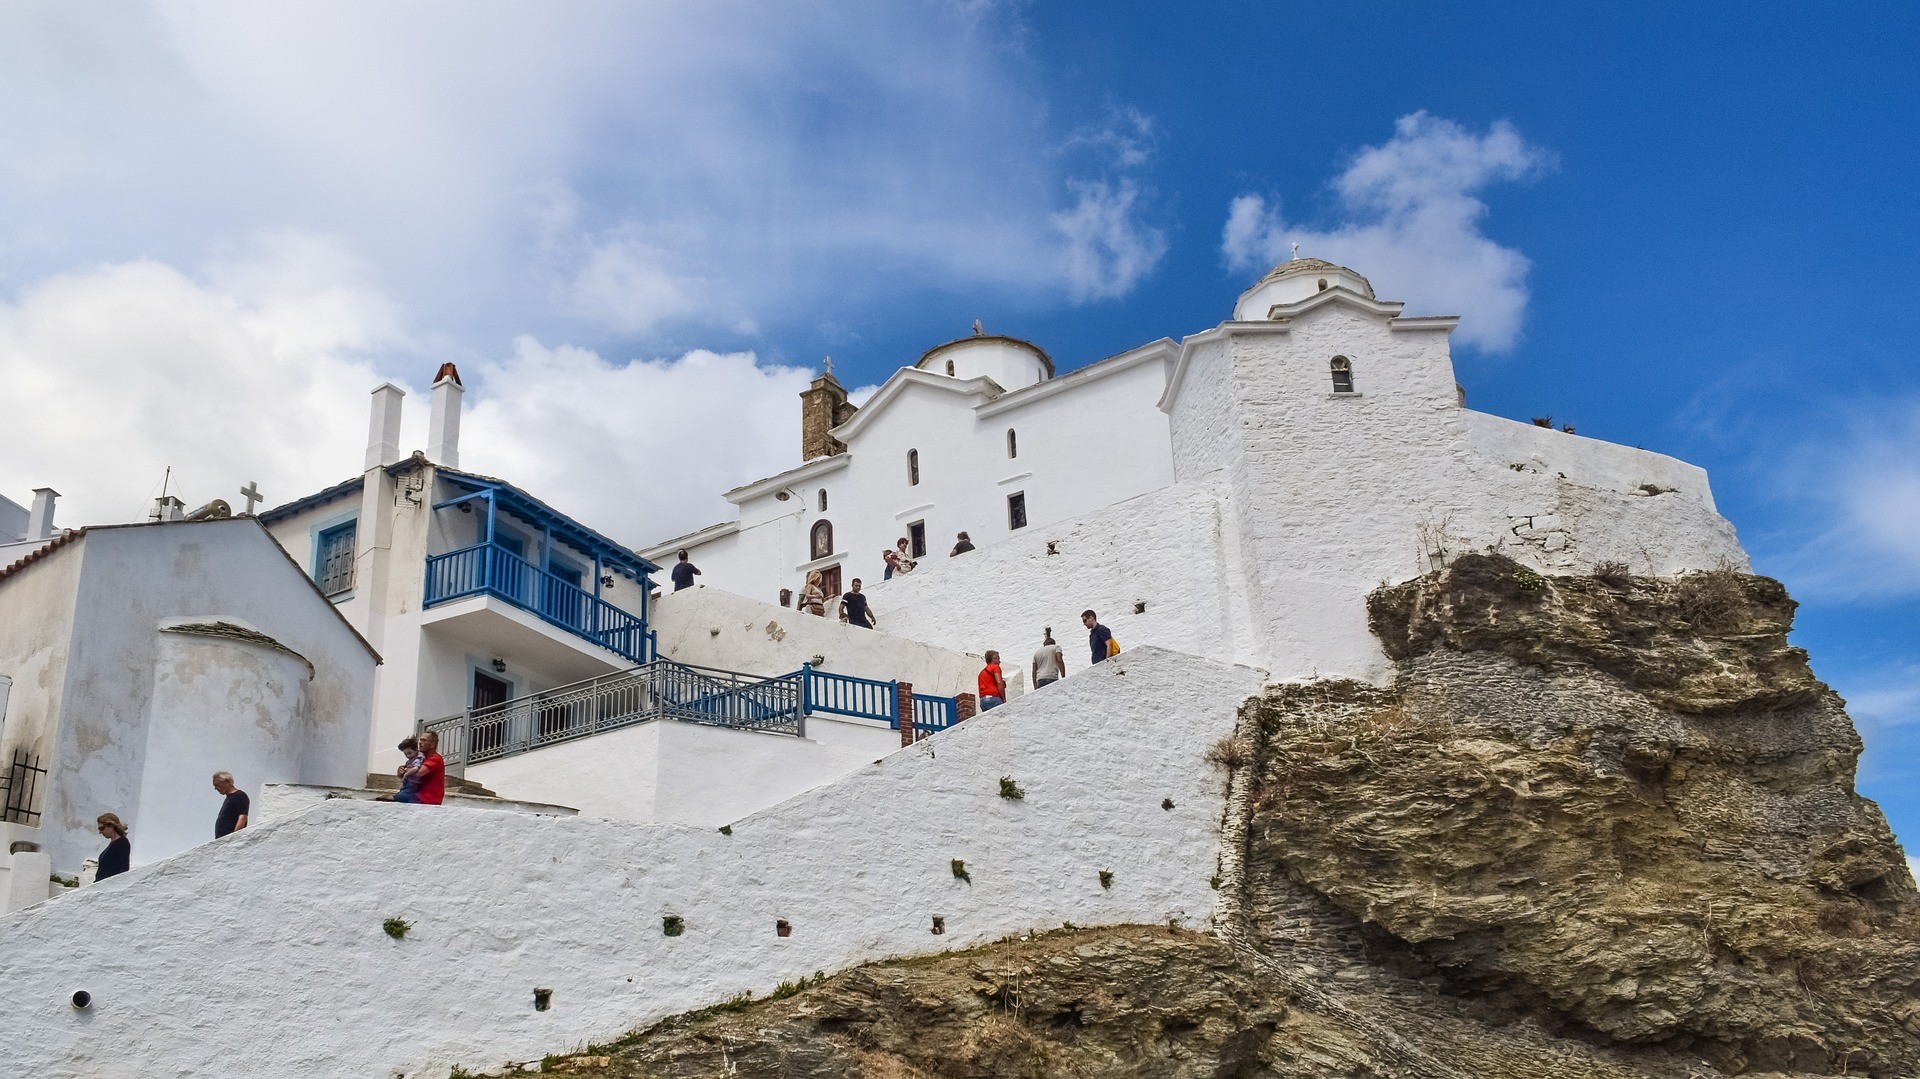 pobielany monastyr wznoszący się na wzgórzu ze schodami, po których schodzą ludzie